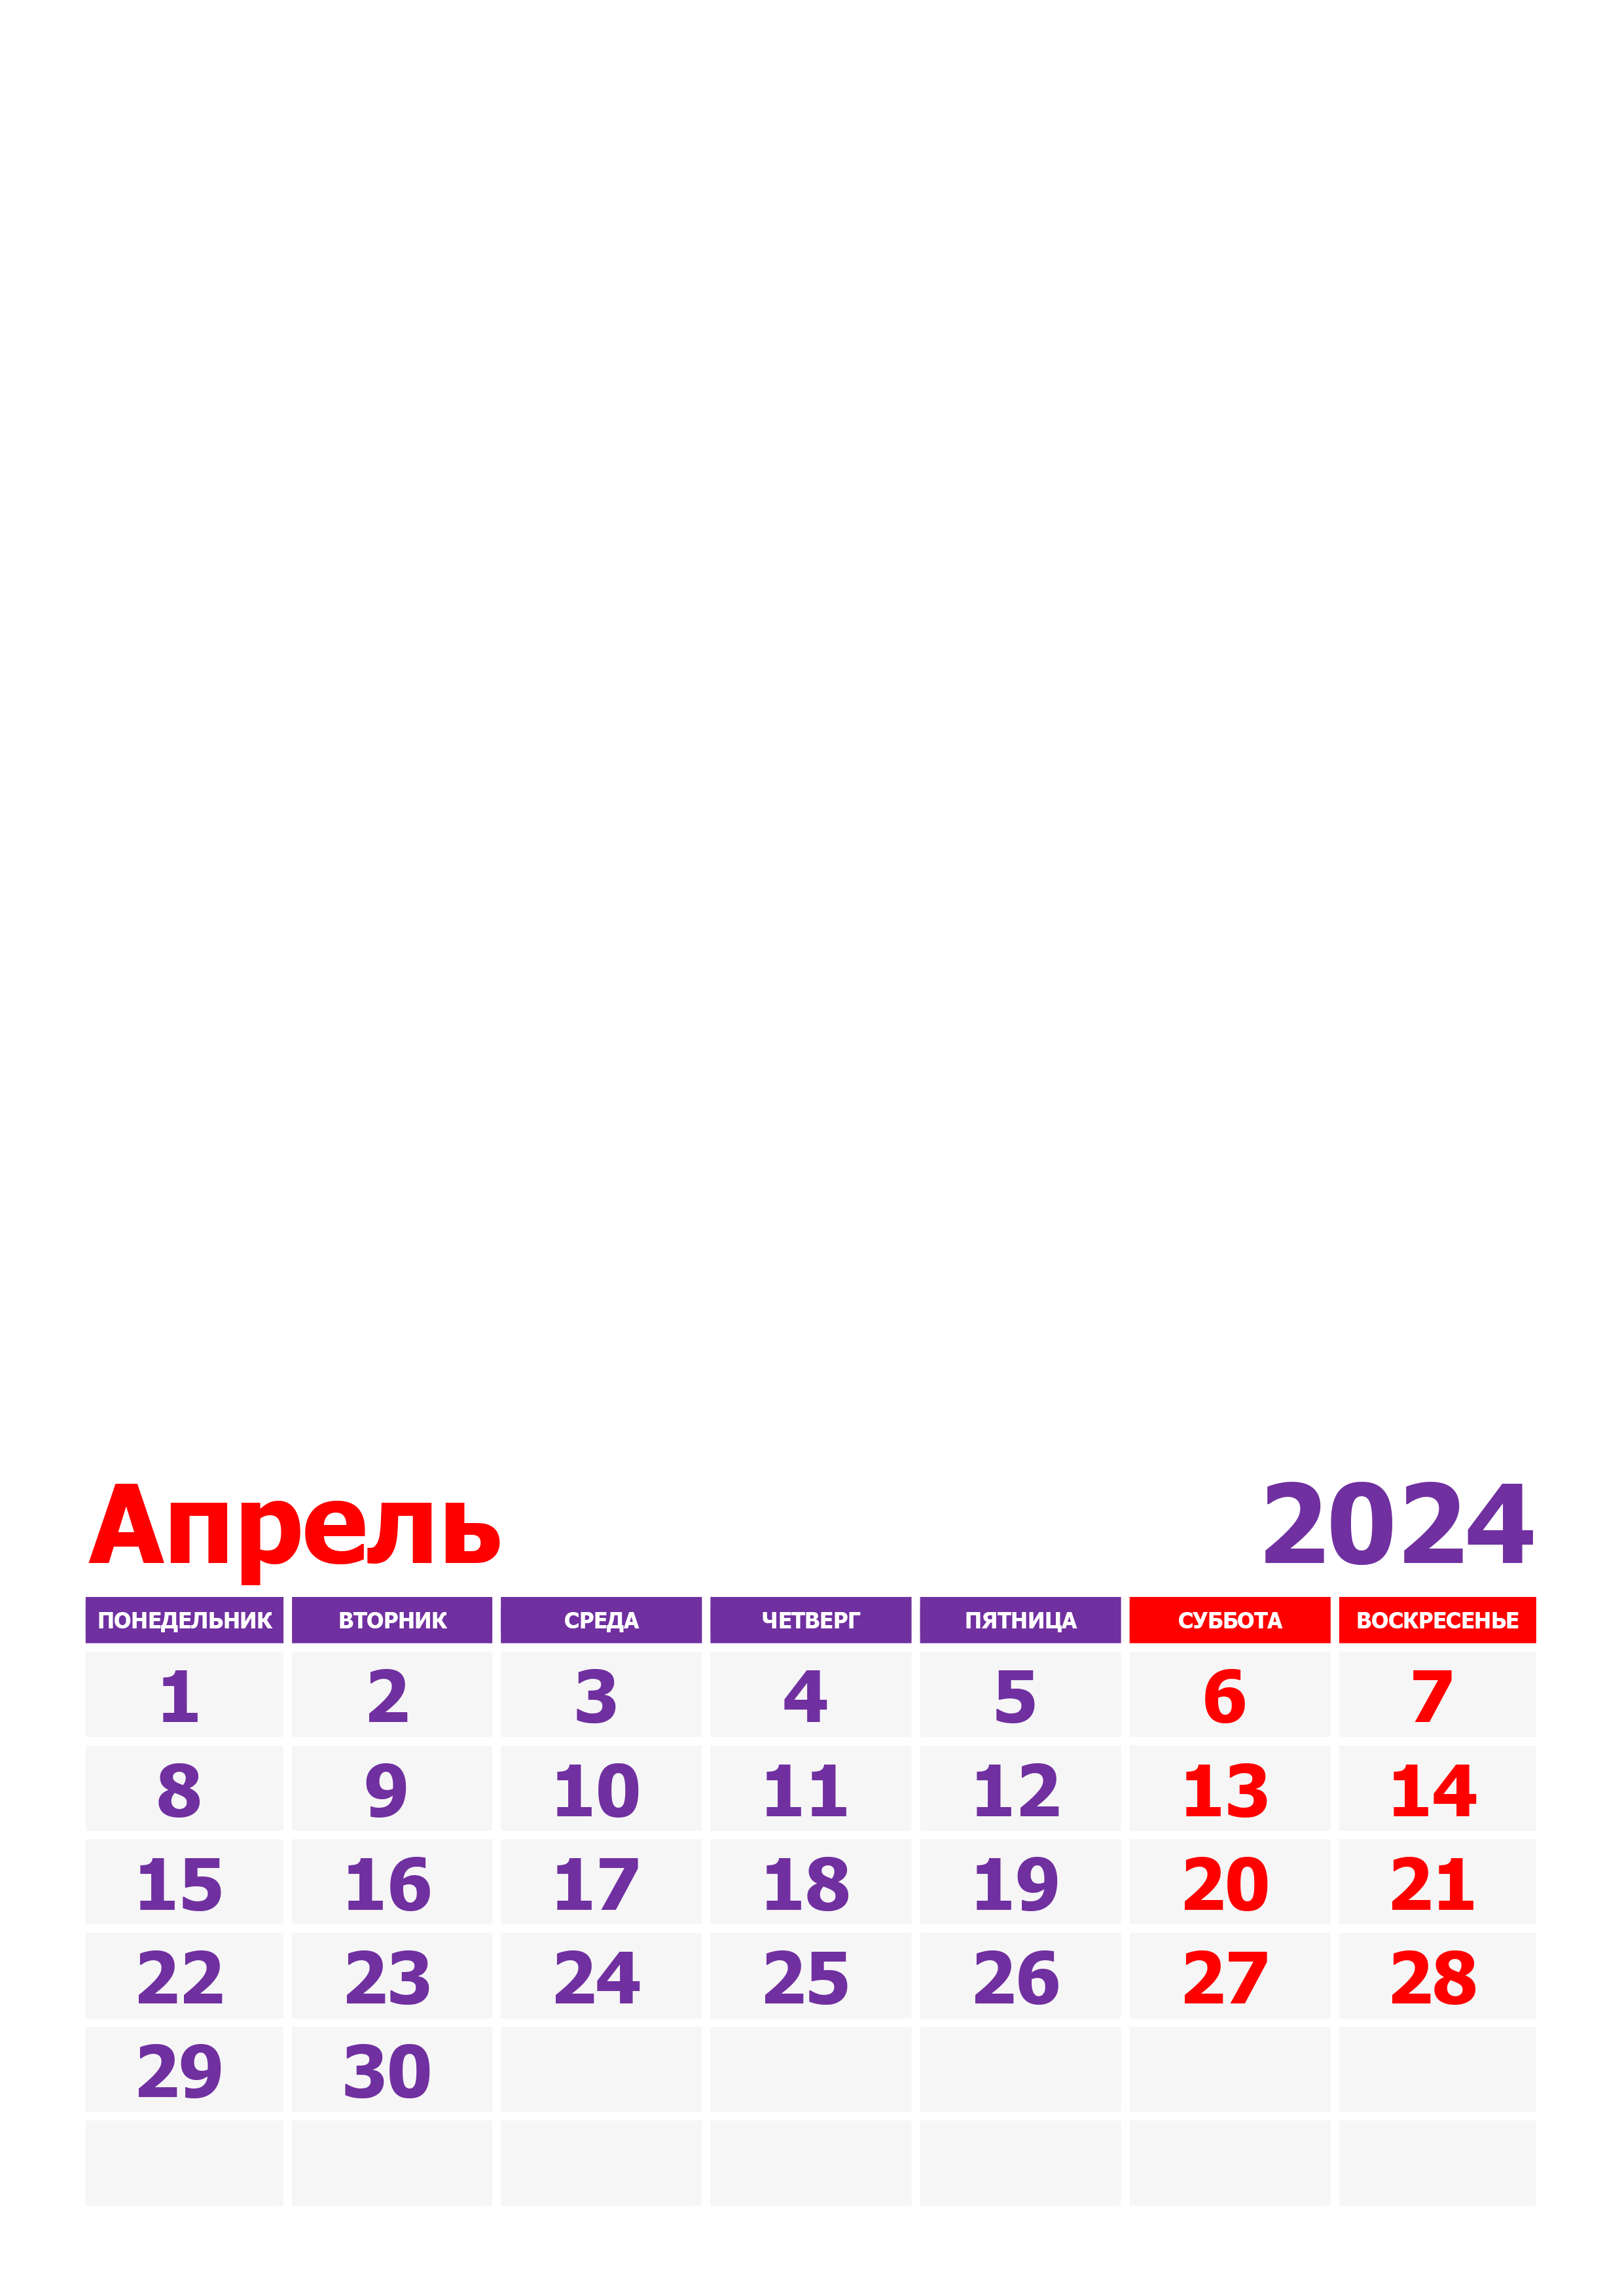 Сколько дней в апреле 2024 г. Апрель 2024. Аперь 2024. Календарь апрель 2024. Календарь на апрель 2024 года.